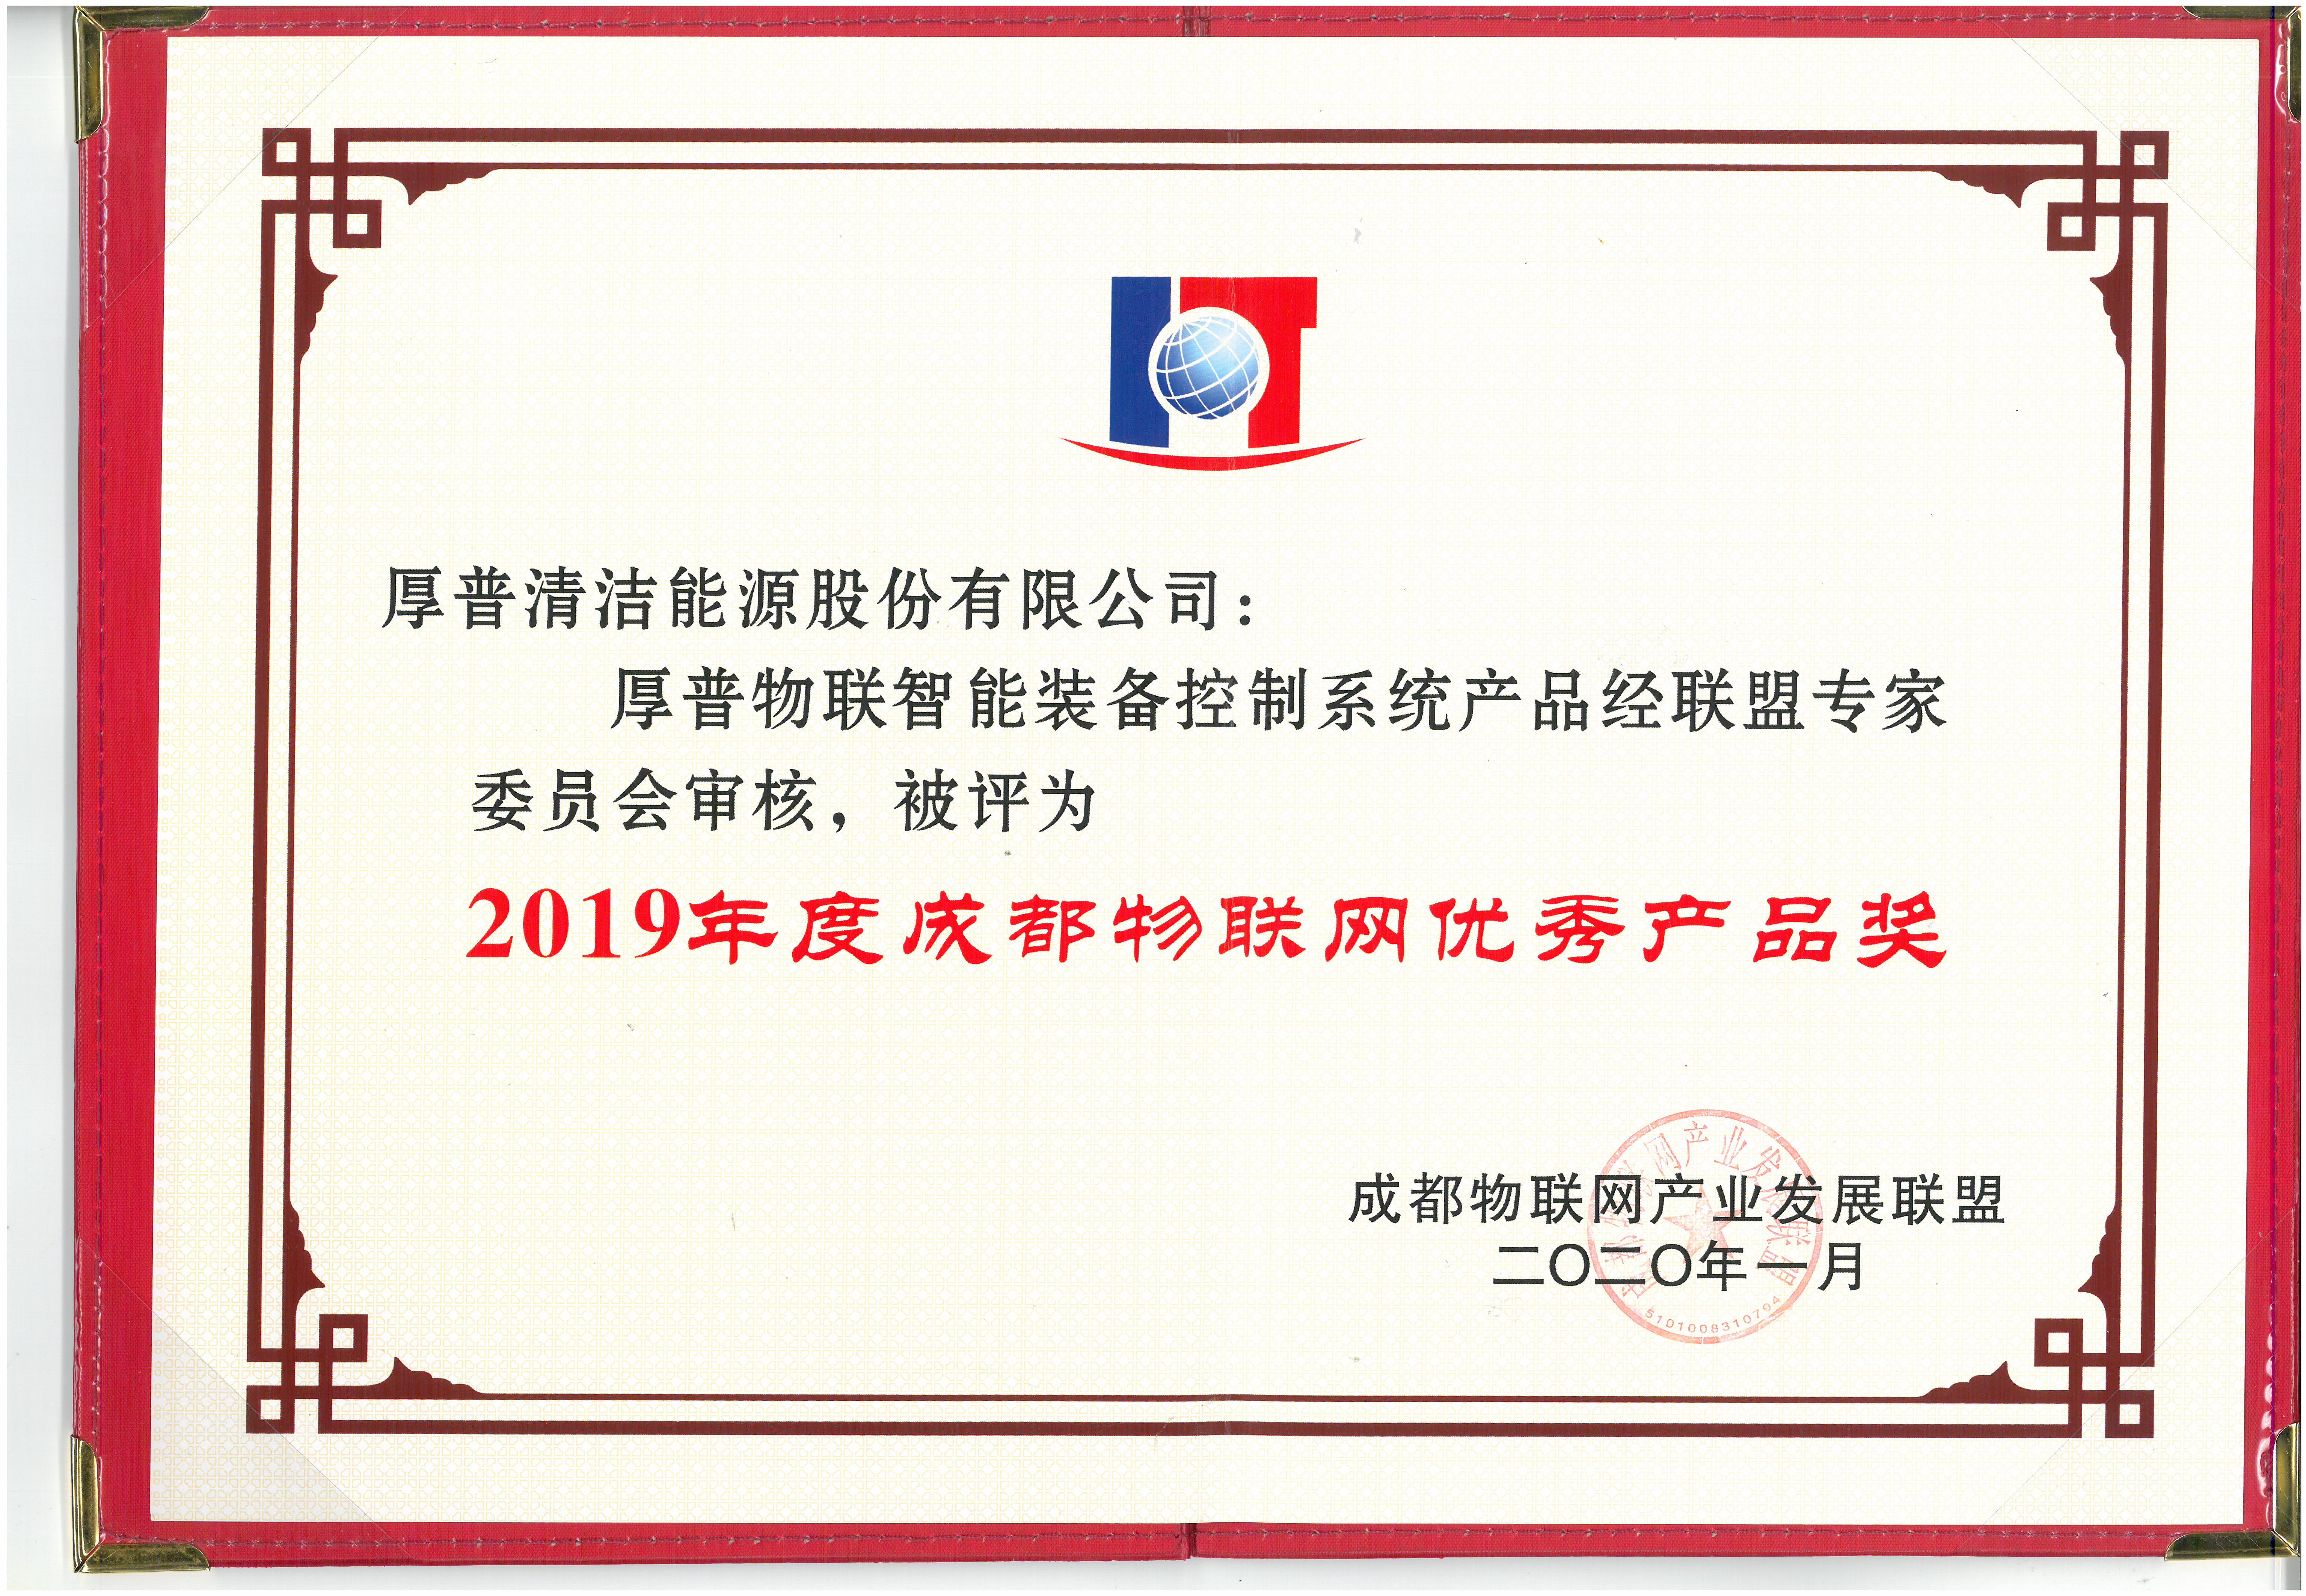 05-77-2019年度成都物联网优秀产品奖